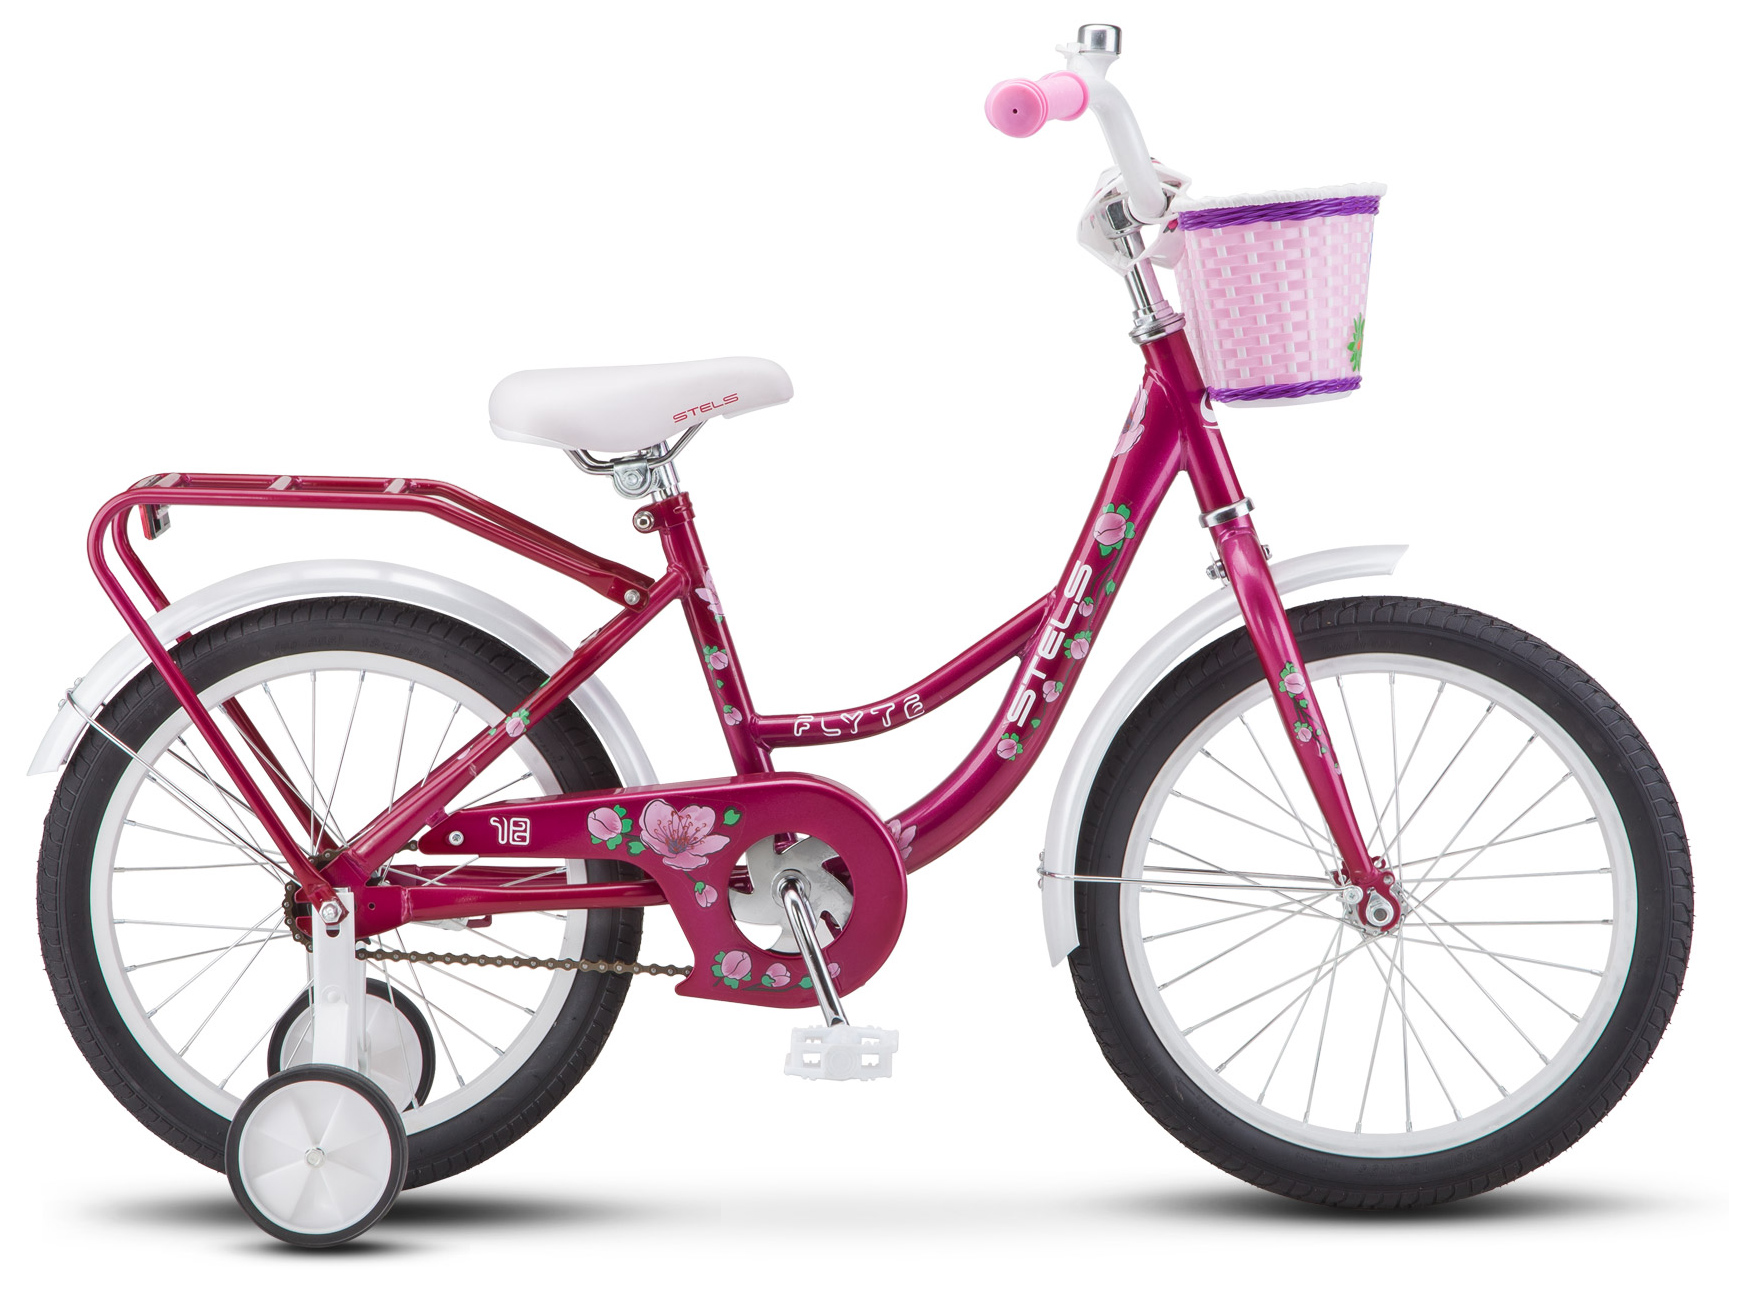  Отзывы о Трехколесный детский велосипед Stels Flyte Lady 18 (Z011) 2019